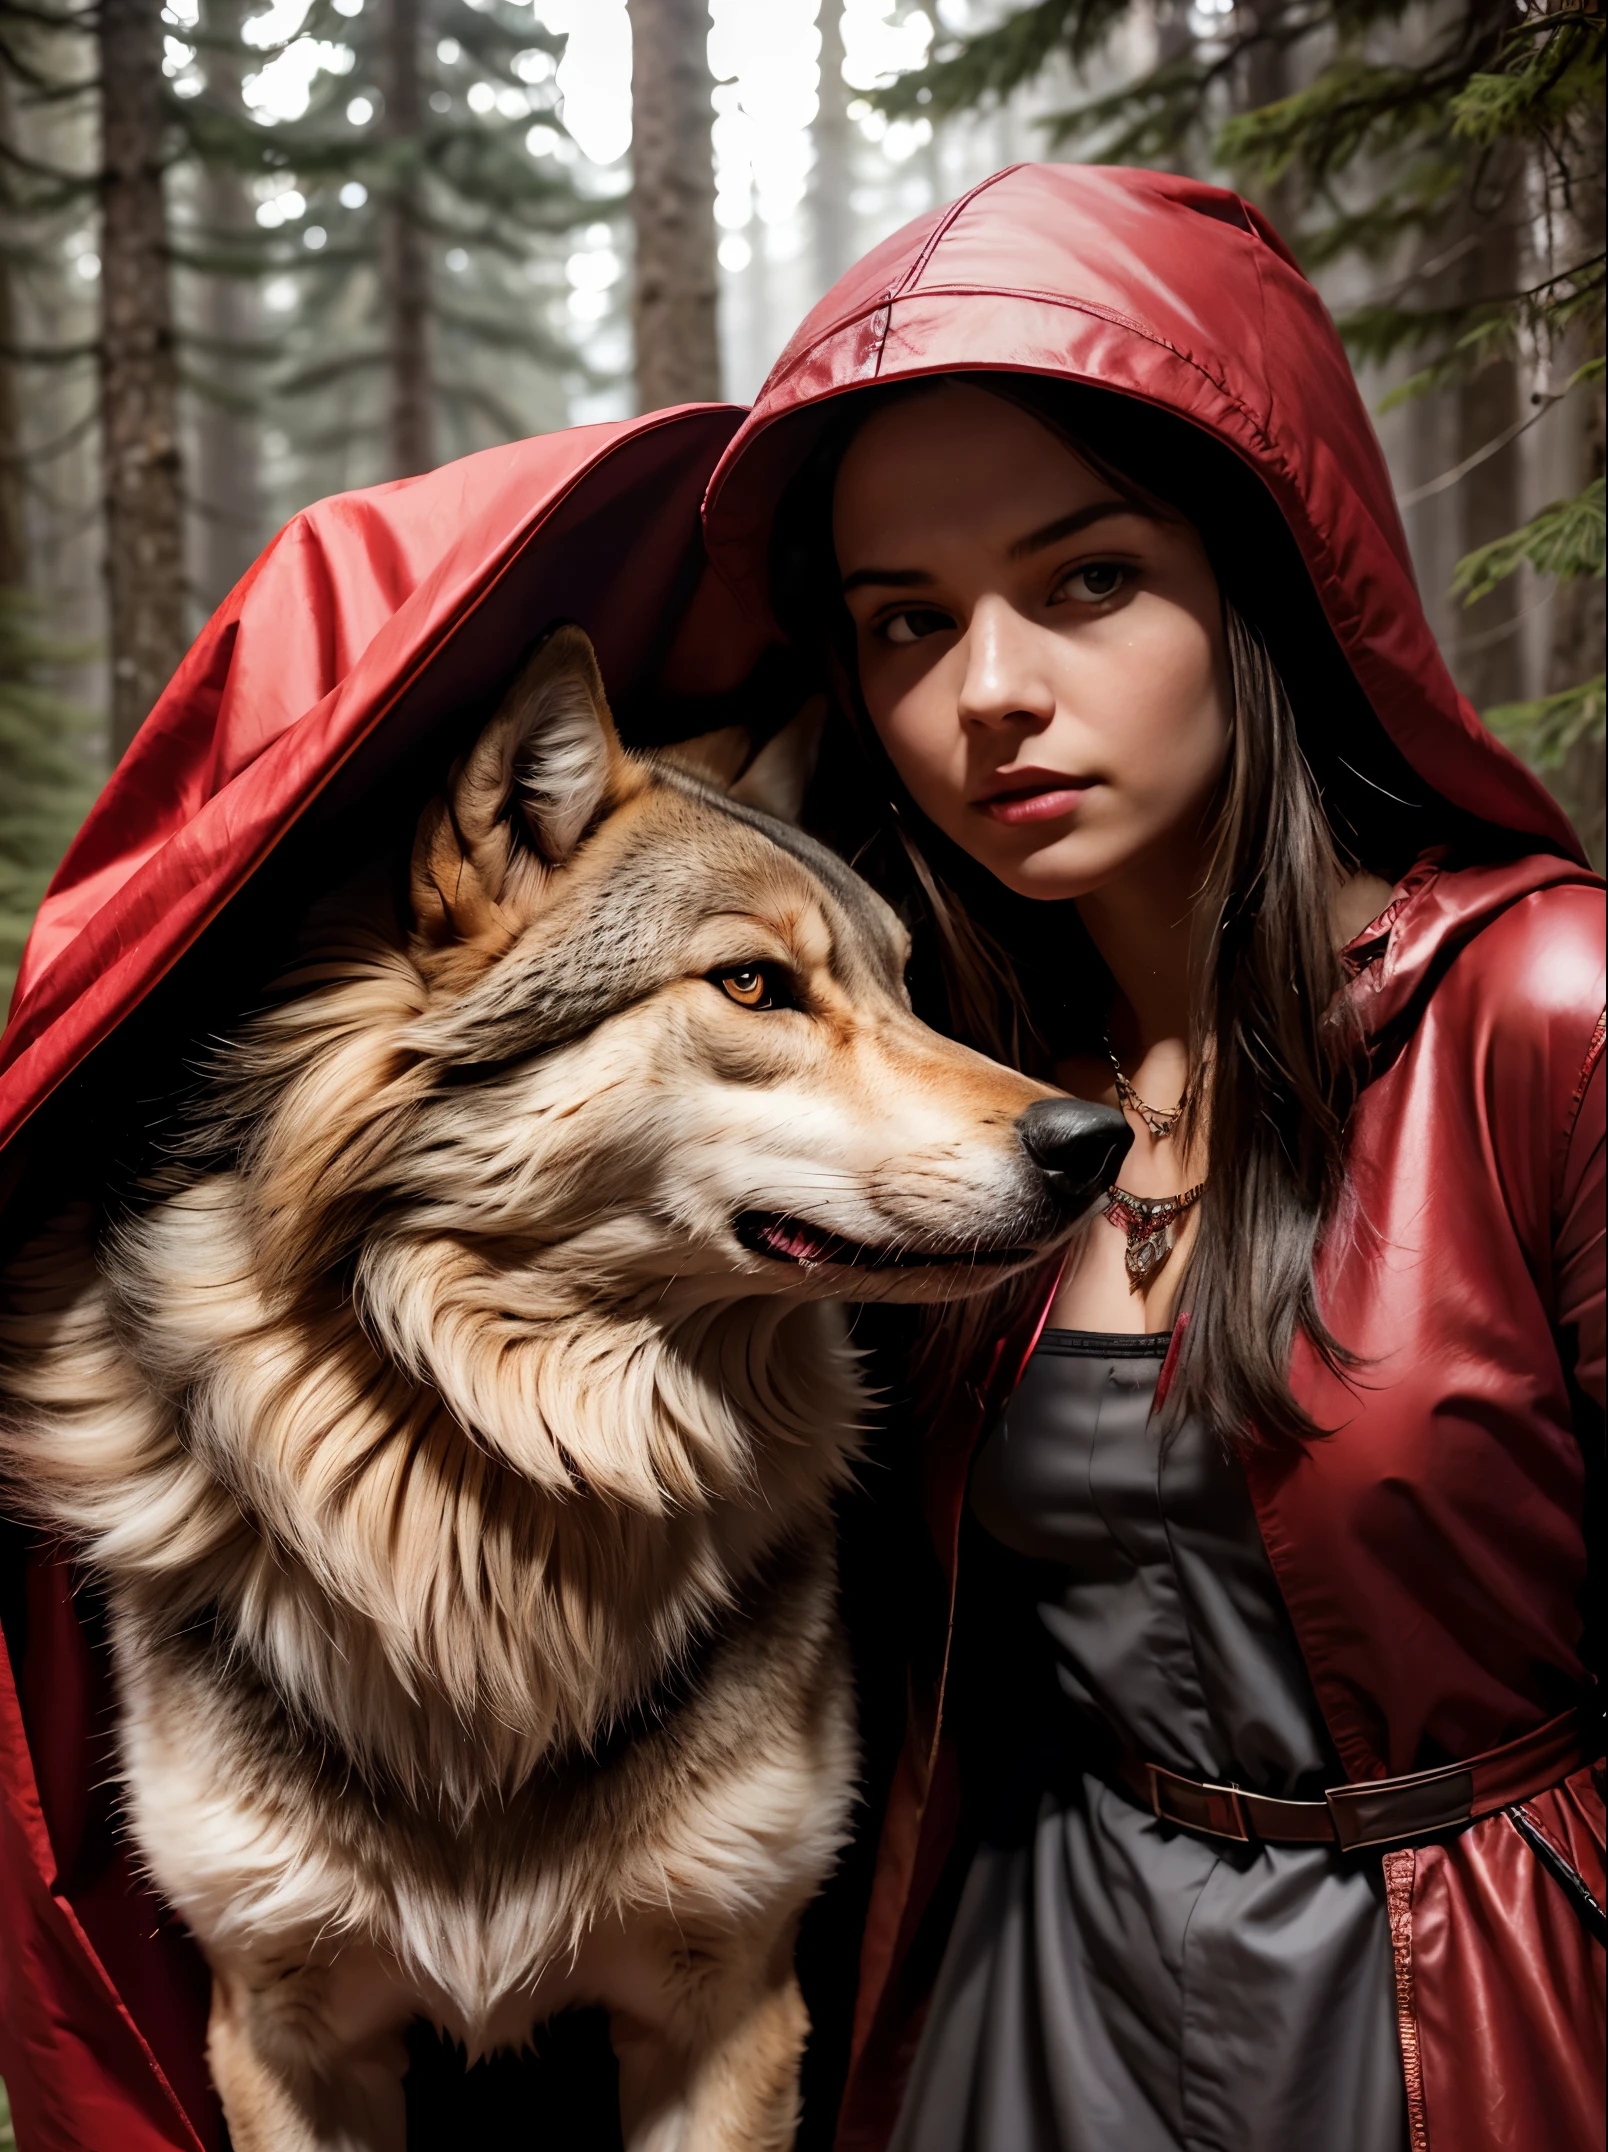 빨간 망토를 입은 20세 소녀 옆에 진짜 늑대가 서 있다., 전체 길이, 숲 속에서, 빨간 모자, 보석 세공의 아름다운 붉은 망토를 입고, 실재론, 사진 4K, 높은 디테일, 영화적 걸작
